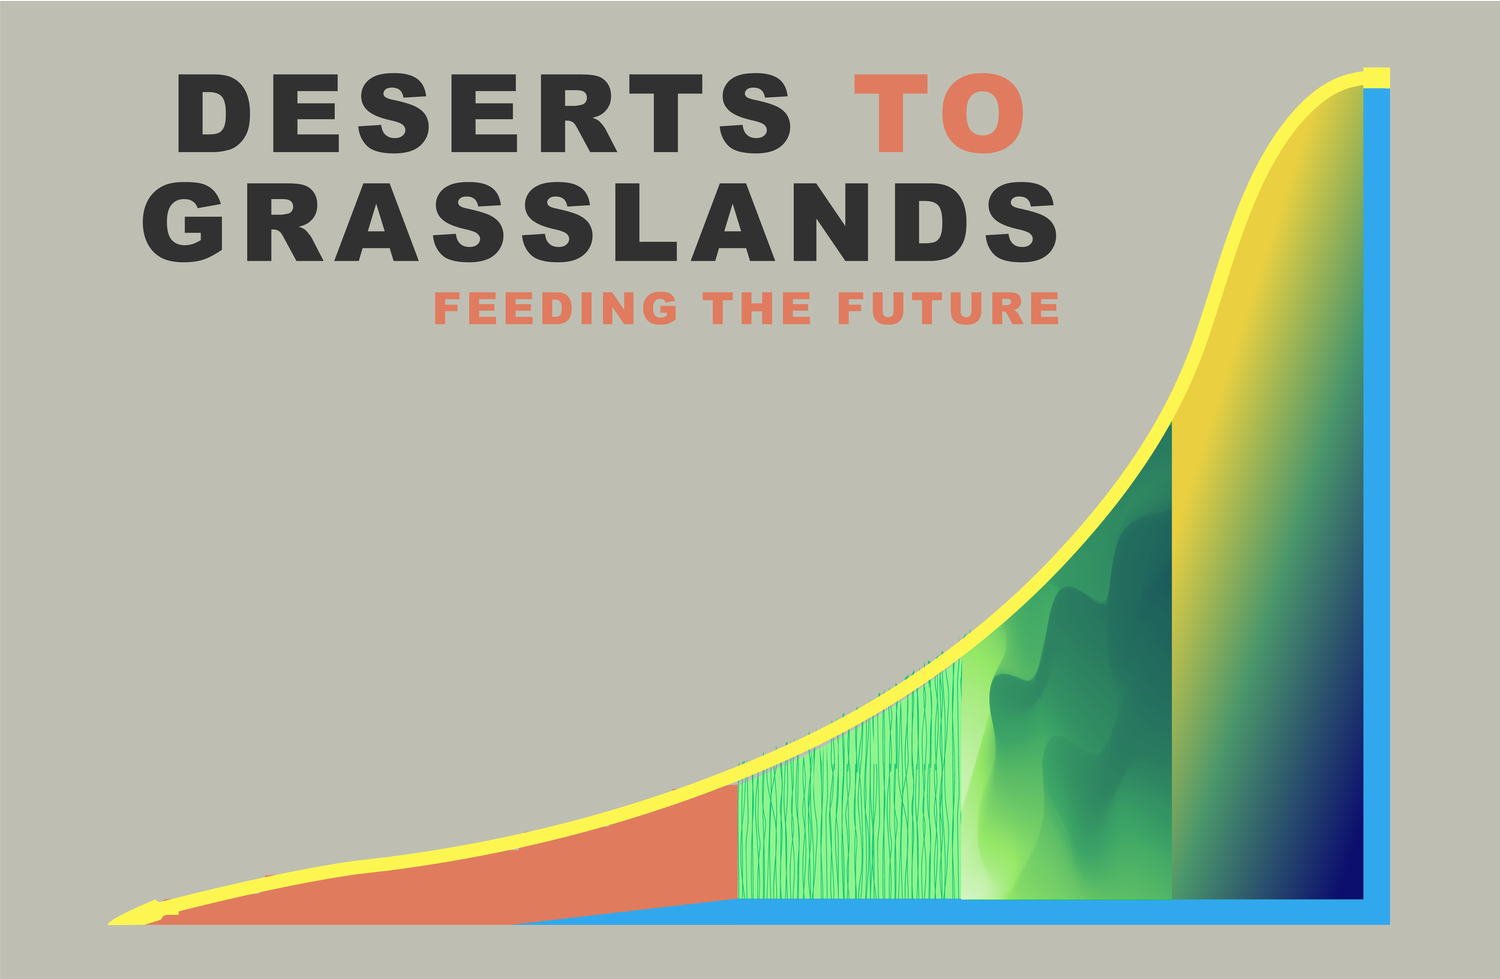 DESERTS TO GRASSLANDS